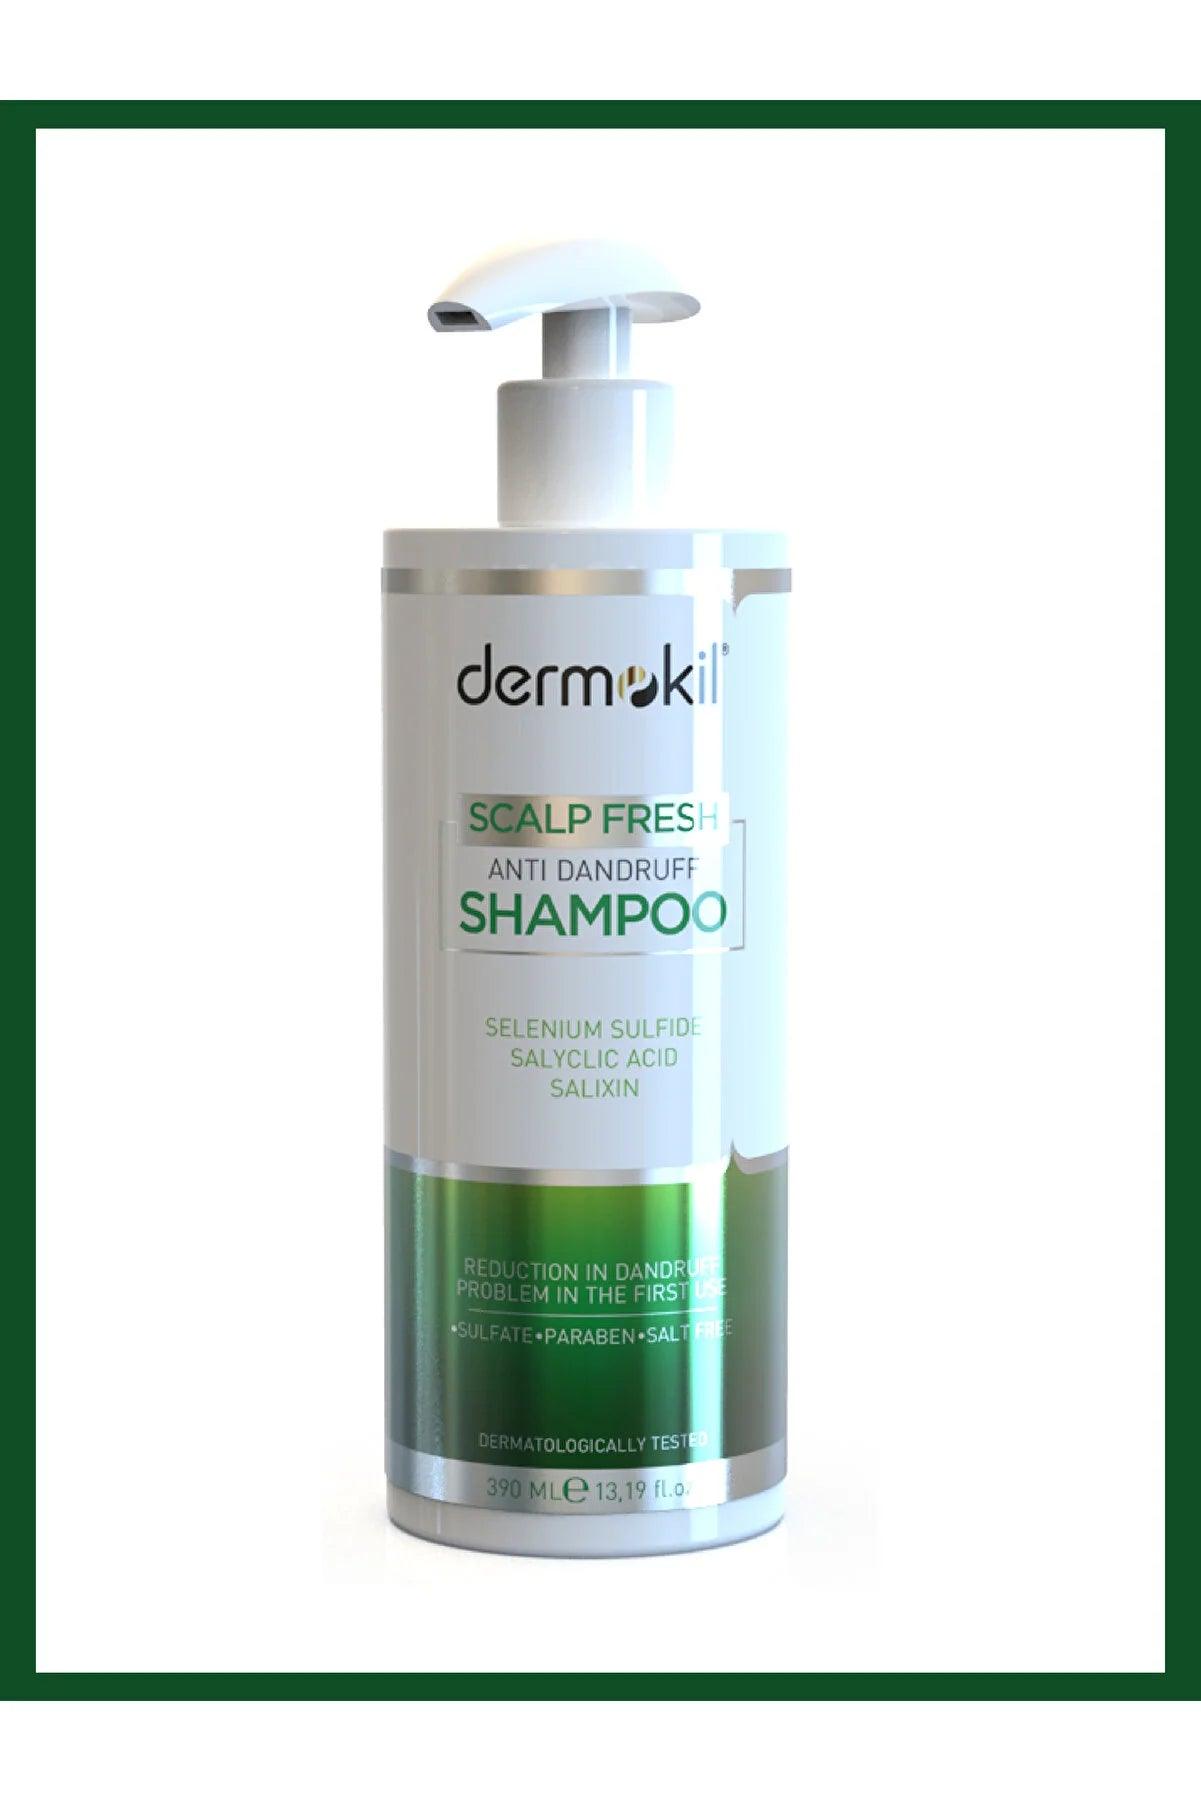 Dermokil Anti-Dandruff Shampoo 390 ml - Mrayti Store